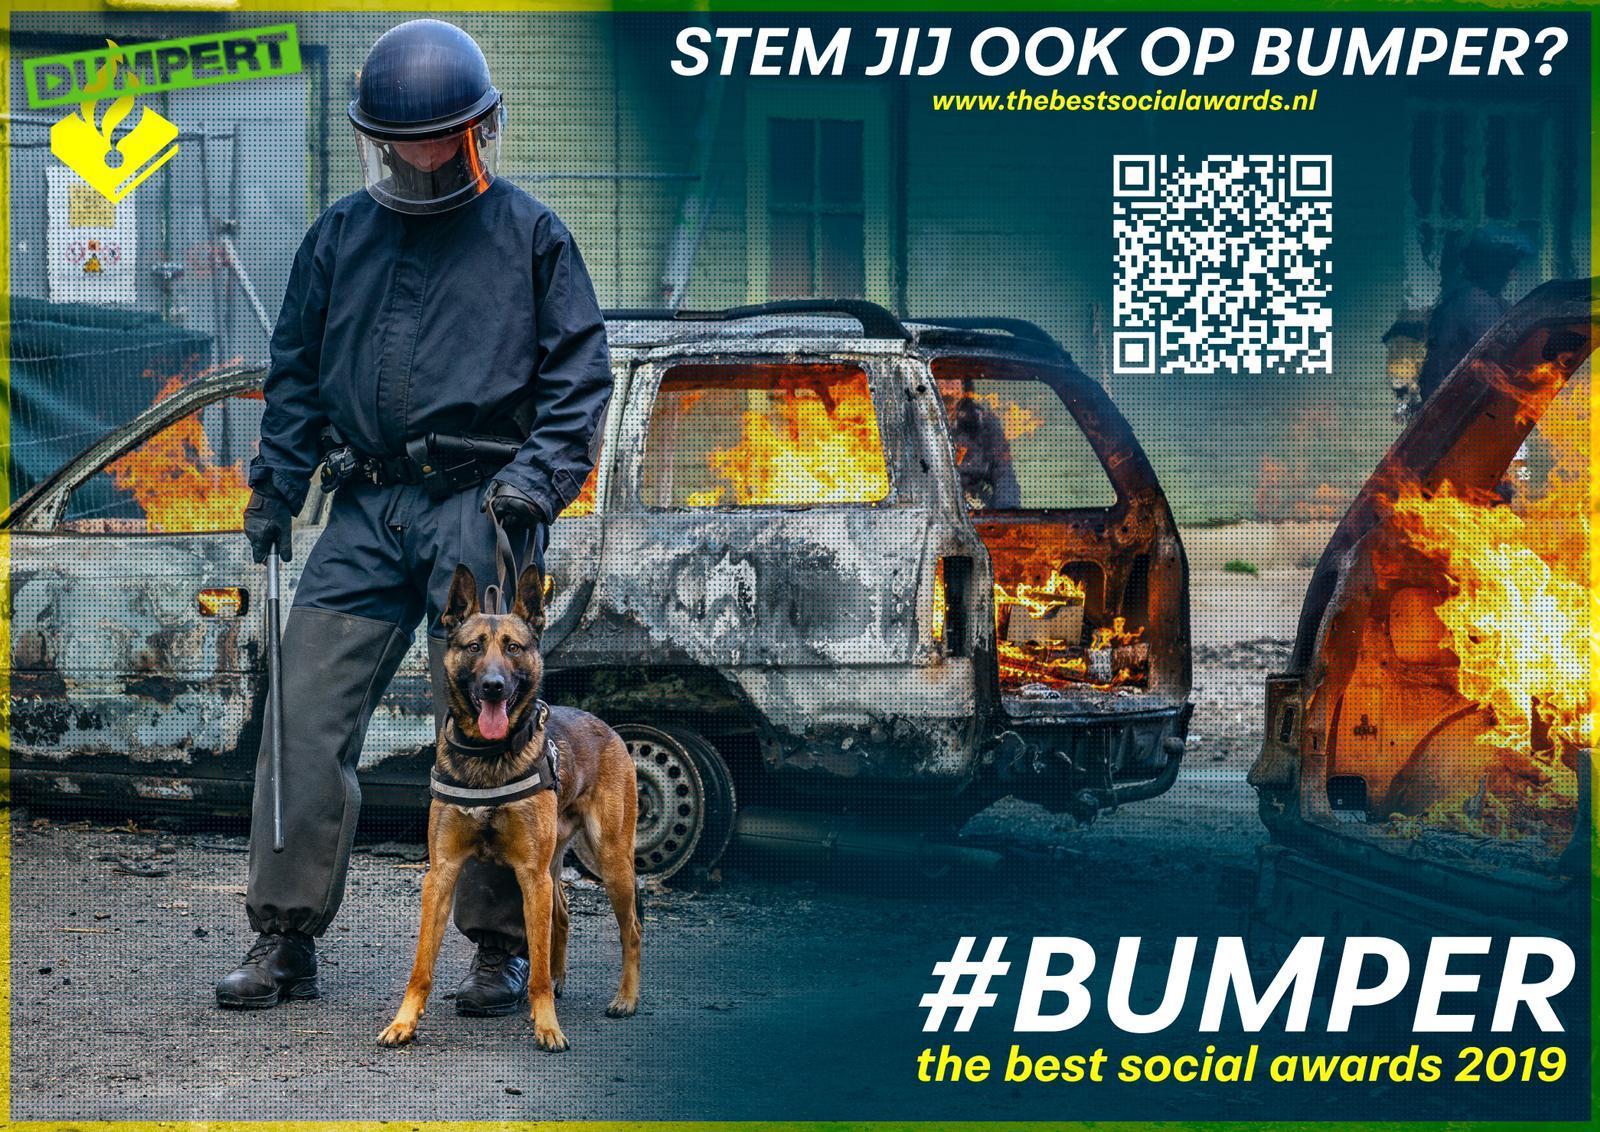 Dumpertheld Bumper genomineerd voor Best social awards